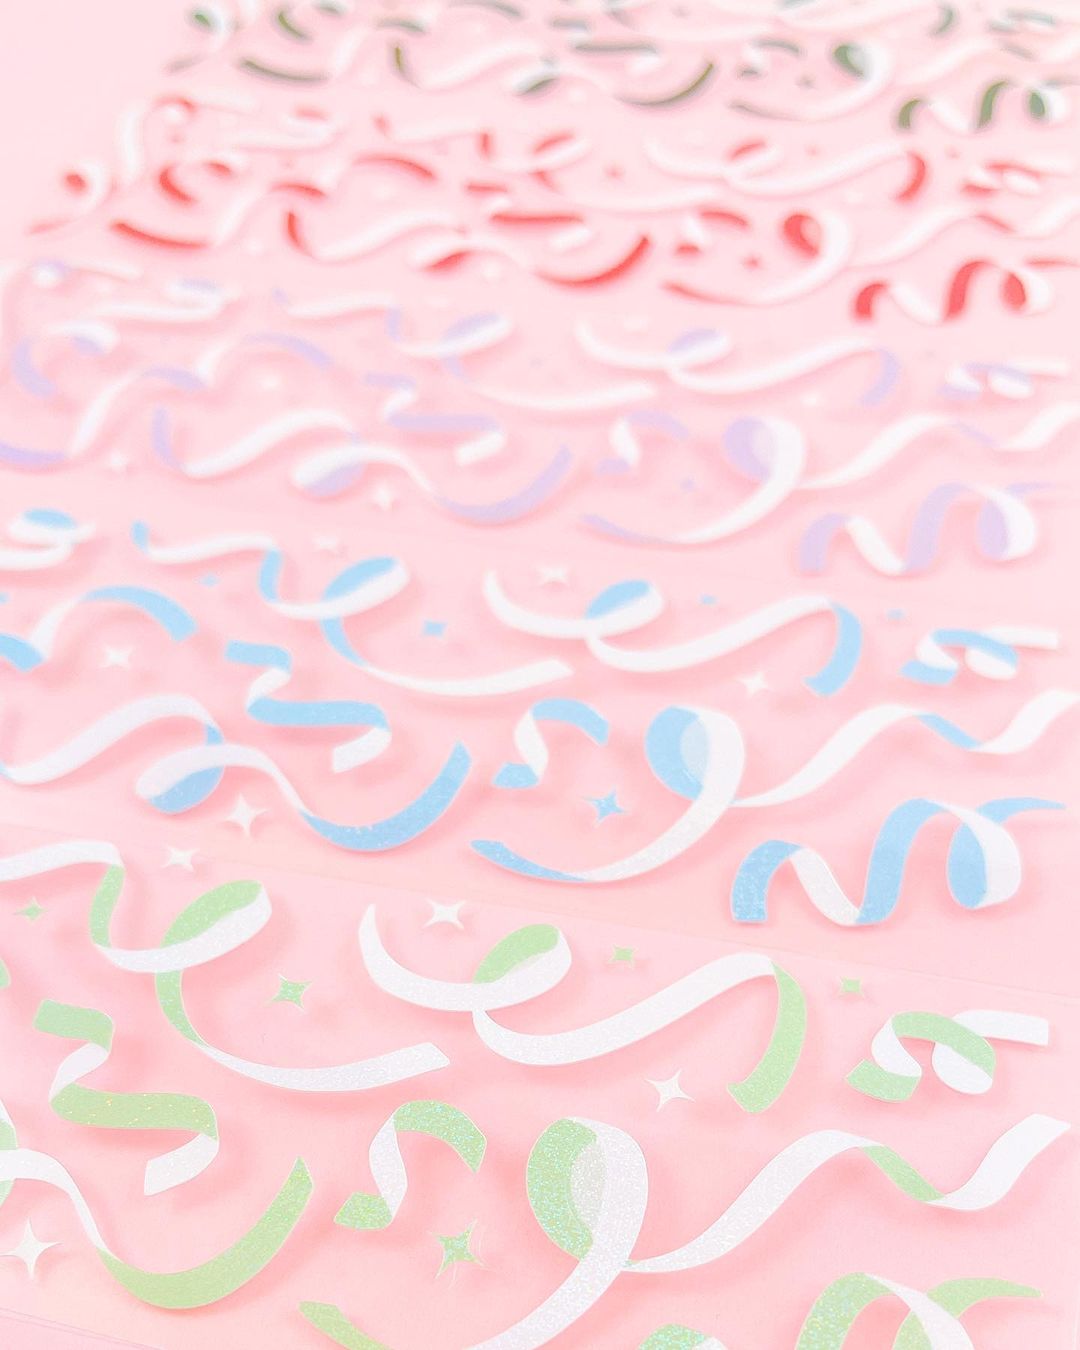 Two-Toned Confetti (6 colors)